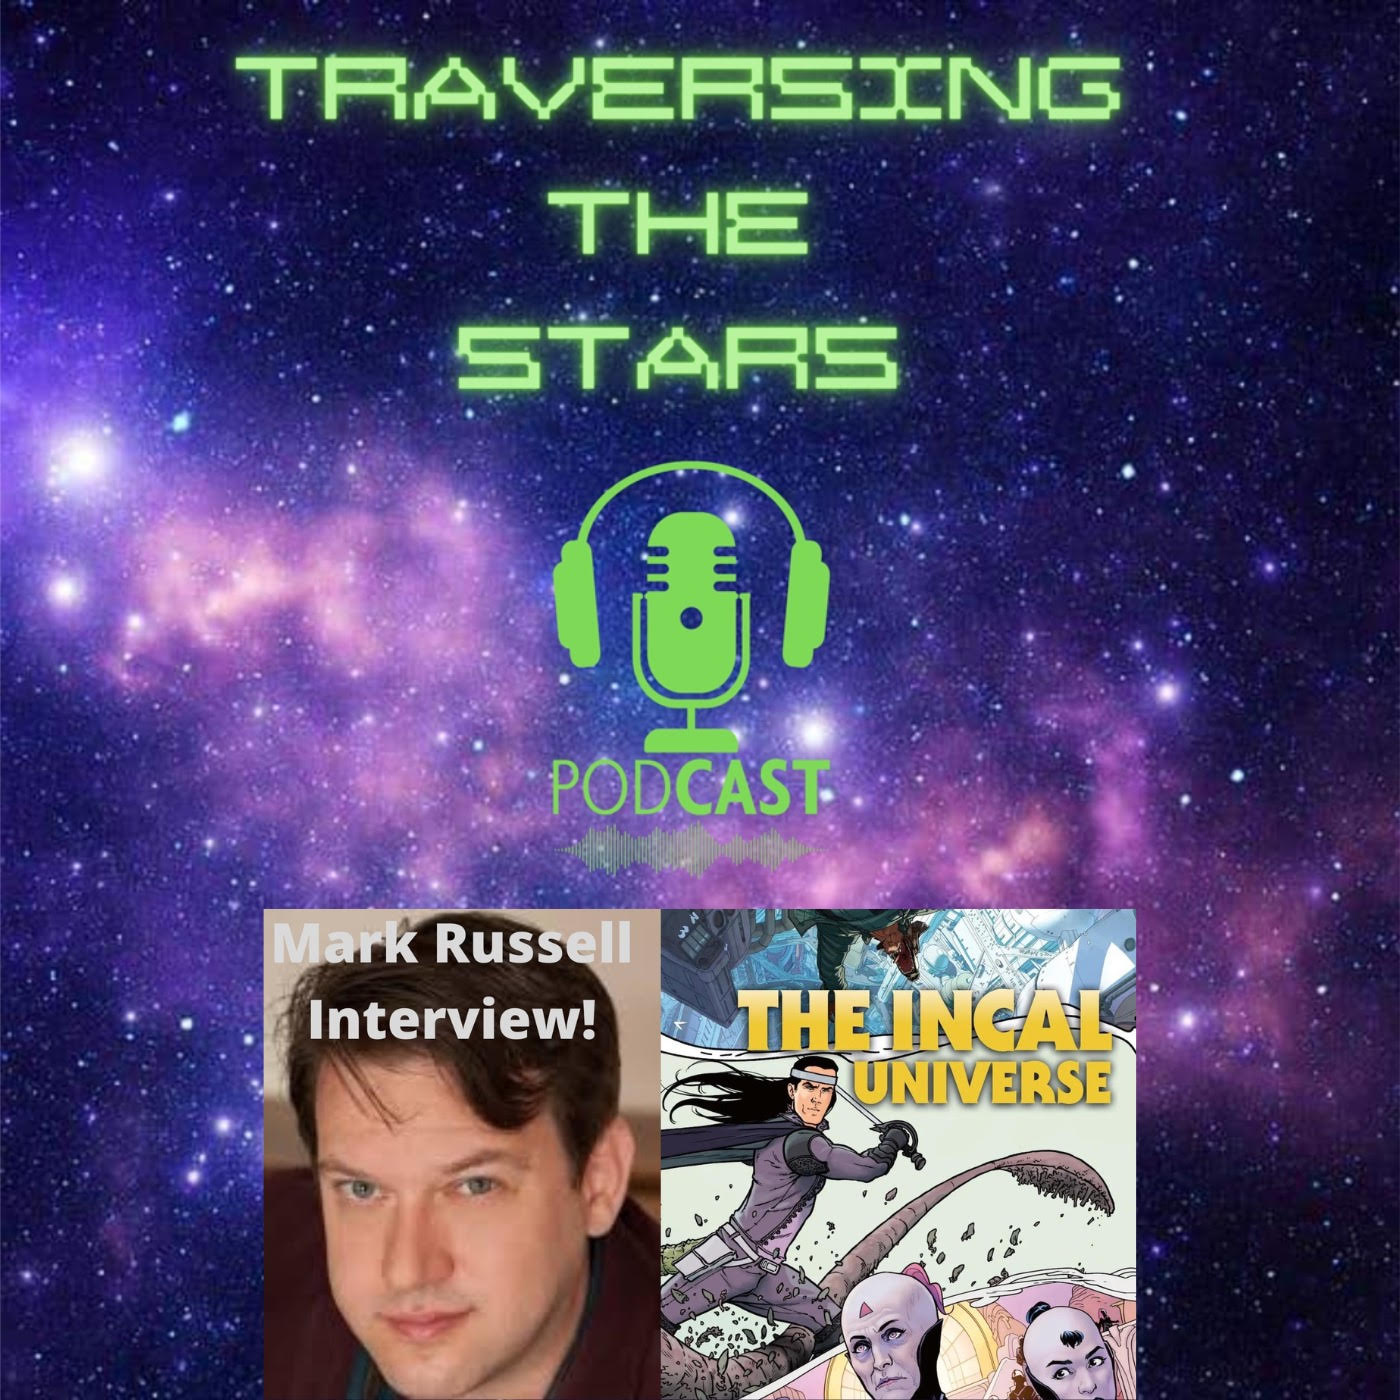 Artwork for podcast Traversing The Stars